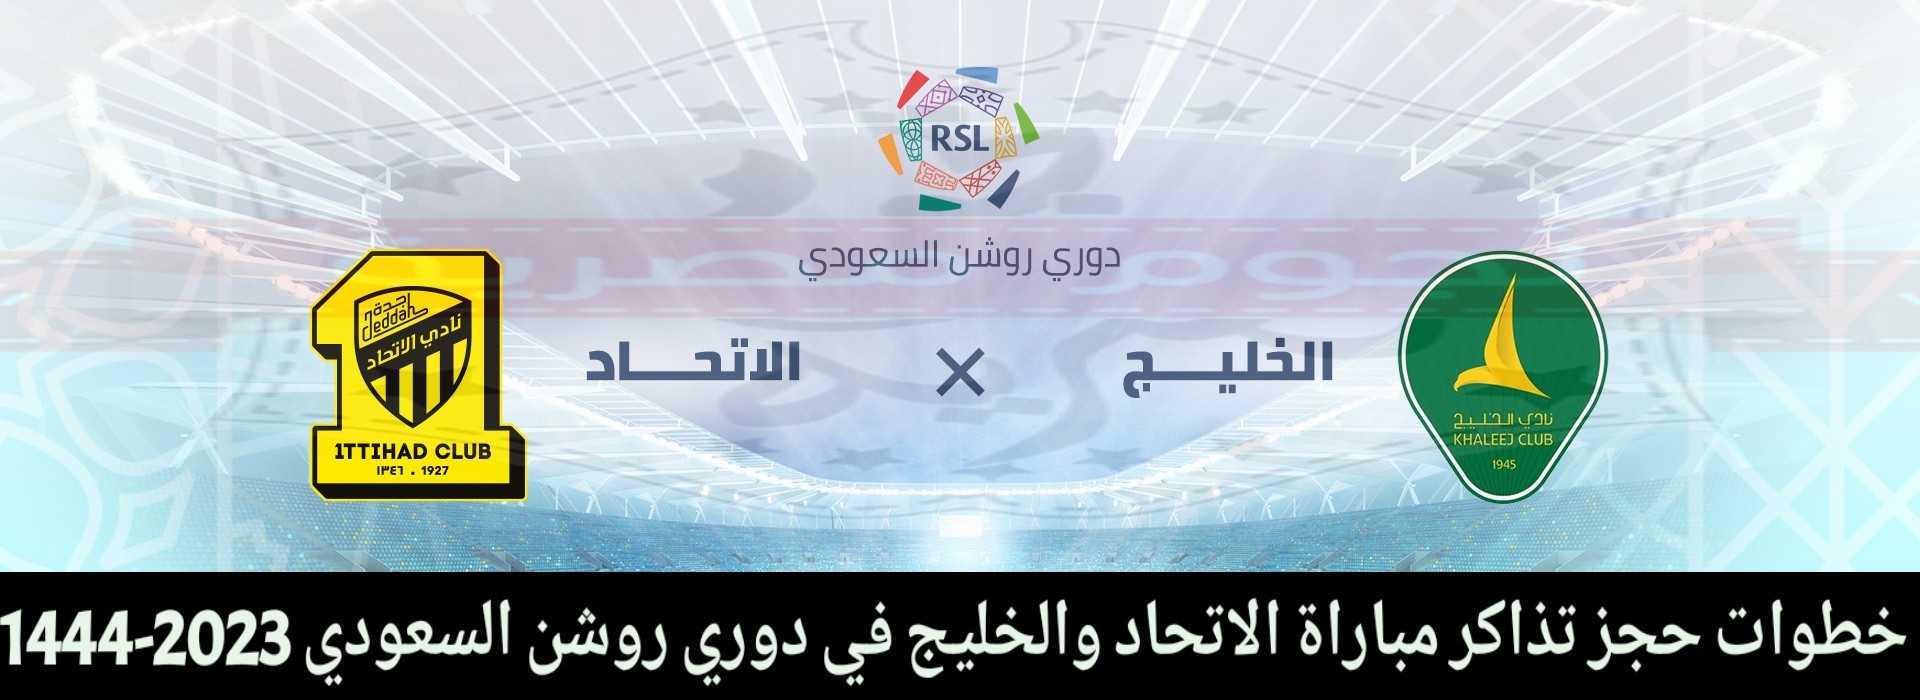 رابط حجز تذاكر مباراة الاتحاد والخليج في دوري روشن السعودي 2023.jpg